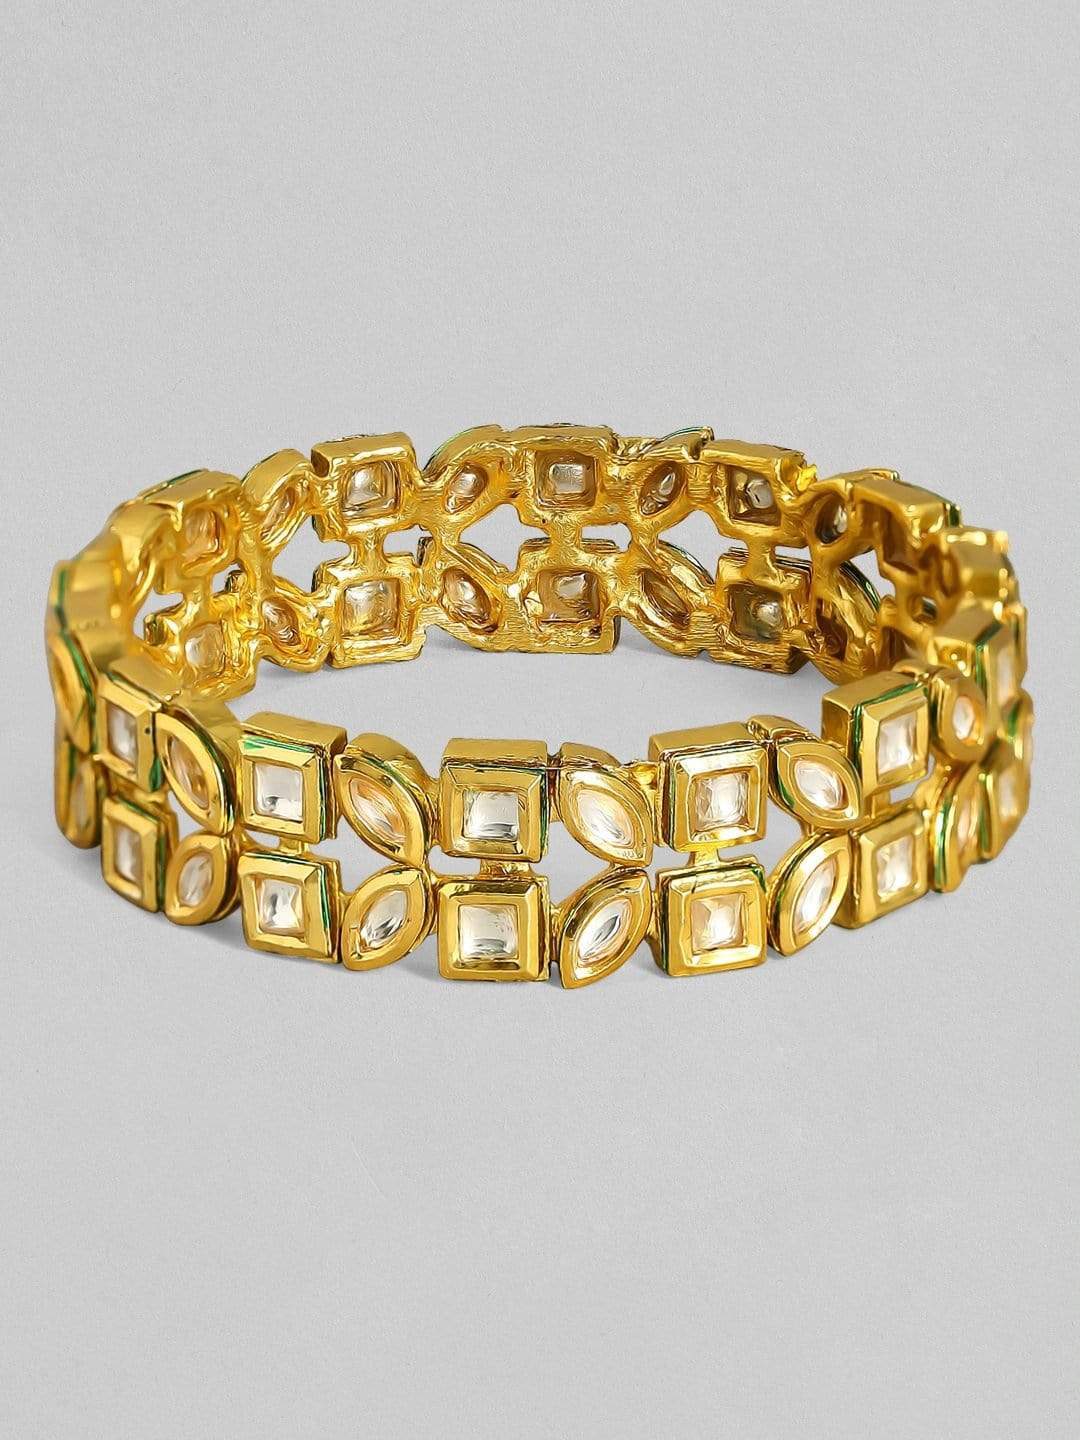 Buy 24k Solid Gold Cuff Bracelet 24k Gold Bangle 24k Gold Online in India   Etsy